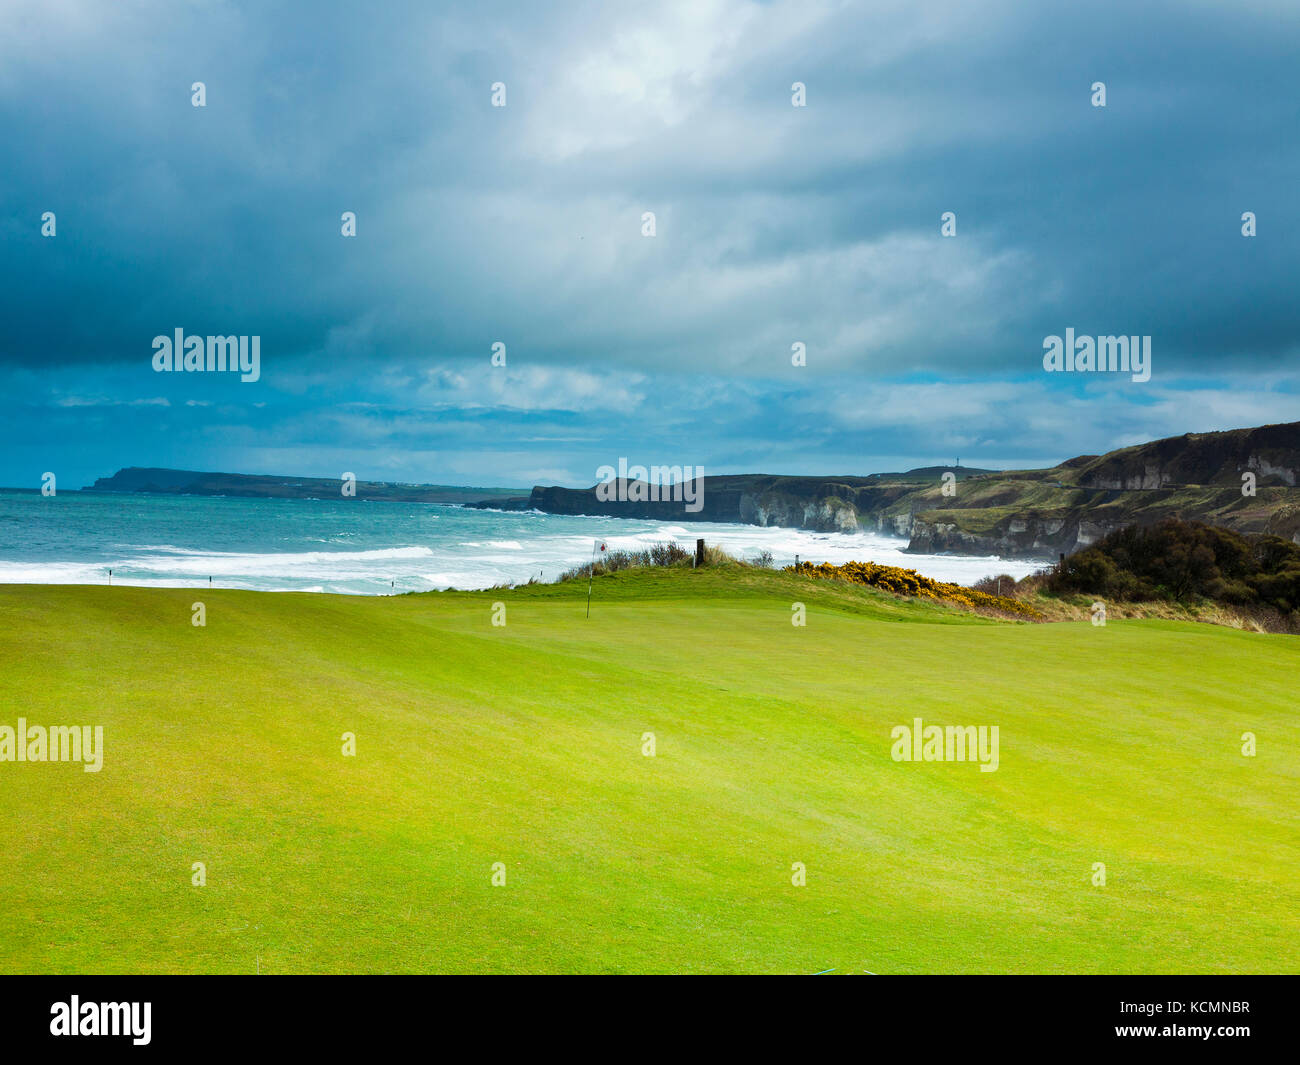 Quinta verde dall'Oceano Atlantico al Royal Portrush Golf club la sede per il 2019 Open di golf Foto Stock